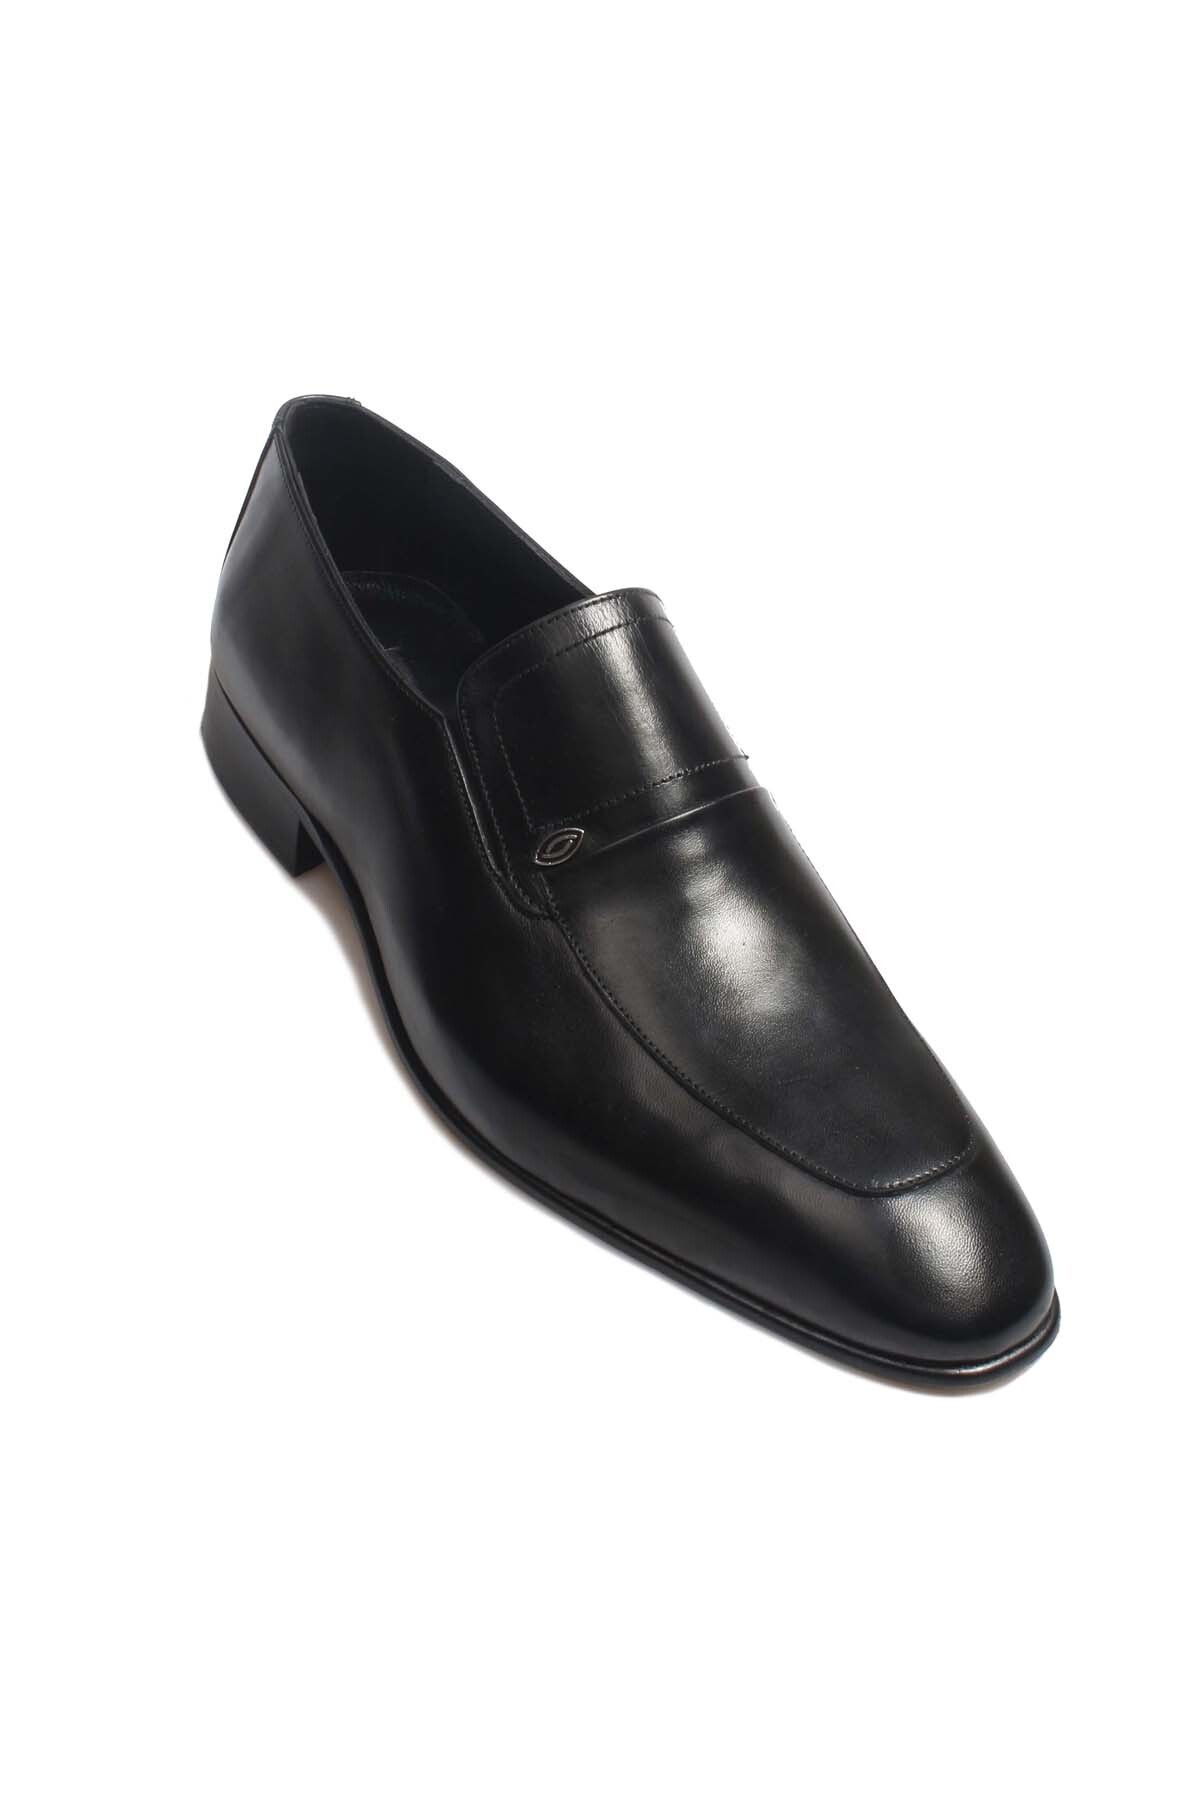 Ayakkabıhane Kösele Taban Içi Dışı Hakiki Deri Siyah Erkek Klasik Ayakkabı Ah089101312406